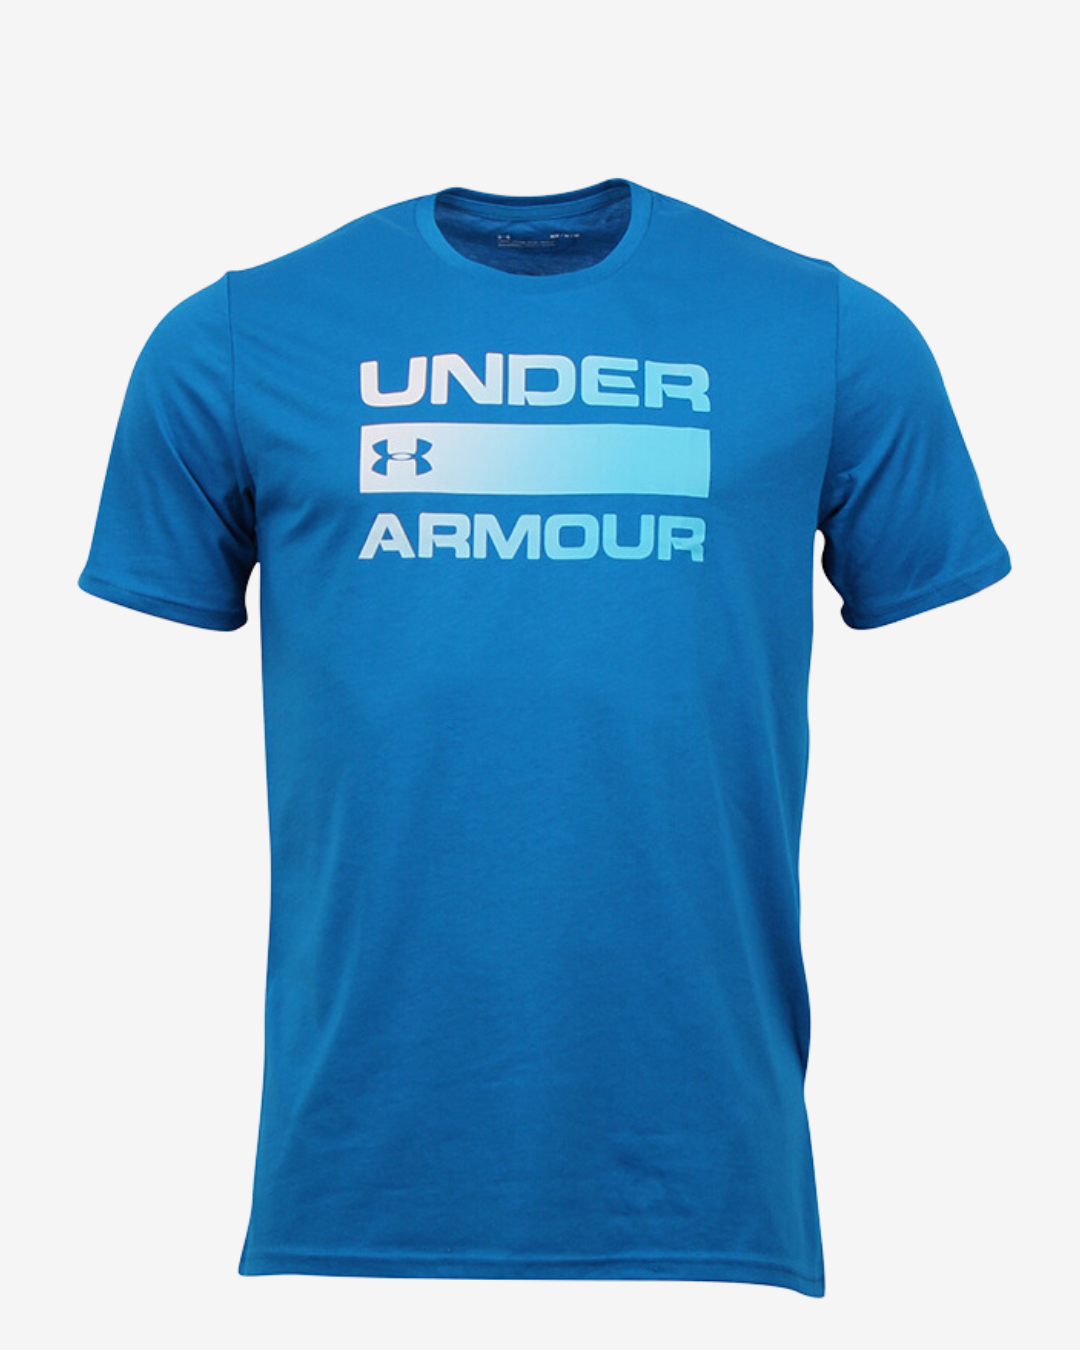 Billede af Under Armour Team issue wordmark t-shirt - Blå - Str. L - Modish.dk